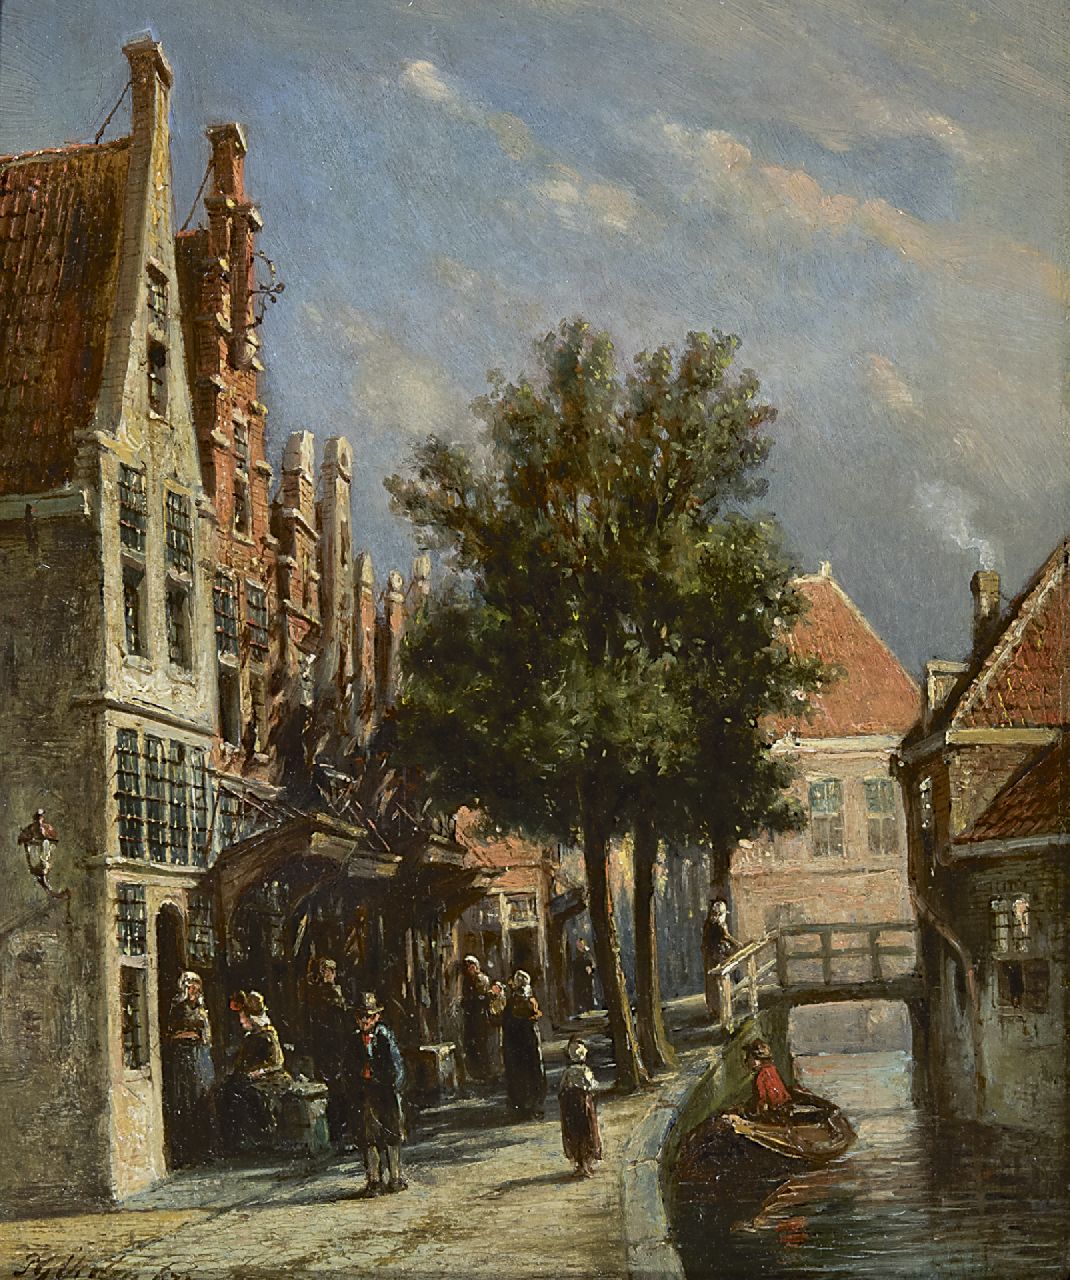 Vertin P.G.  | Petrus Gerardus Vertin | Schilderijen te koop aangeboden | Hollands stadsgrachtje, olieverf op paneel 21,9 x 18,0 cm, gesigneerd linksonder en gedateerd '73